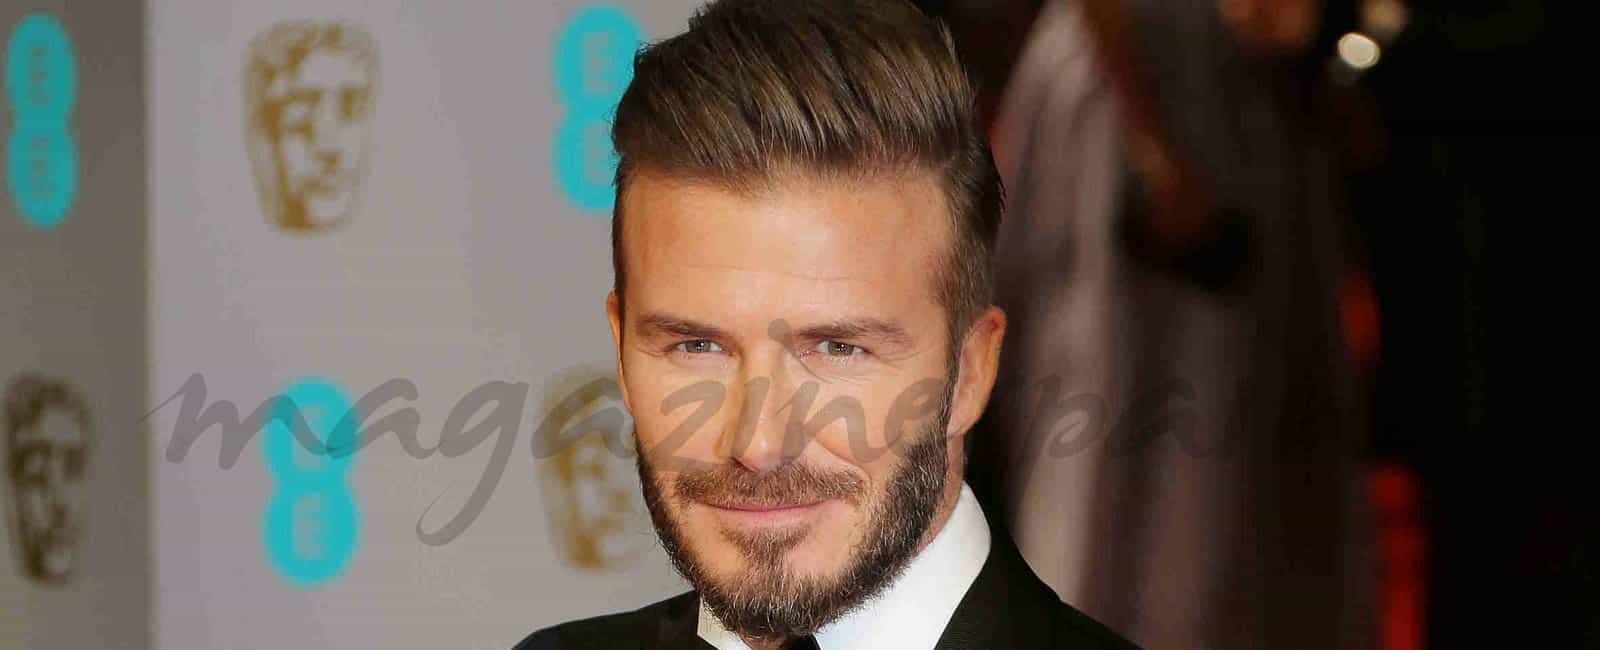 David  Beckham, modelo de cosmética